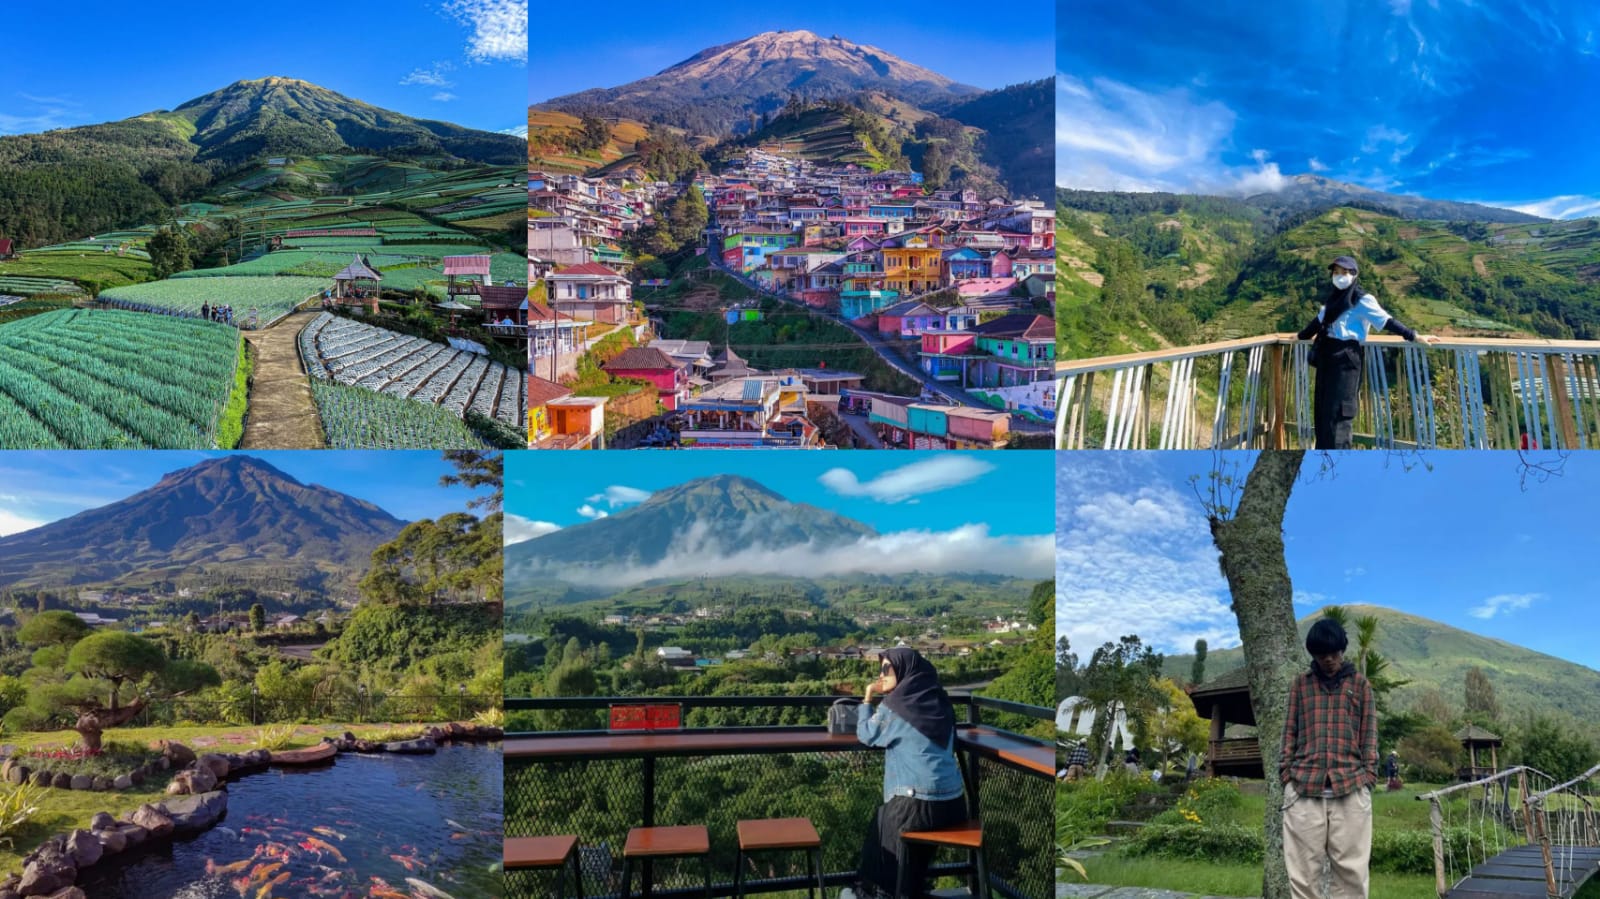 5 Spot Andalan Untuk Menyaksikan Keindahan Gunung Sumbing di Magelang-Temanggung